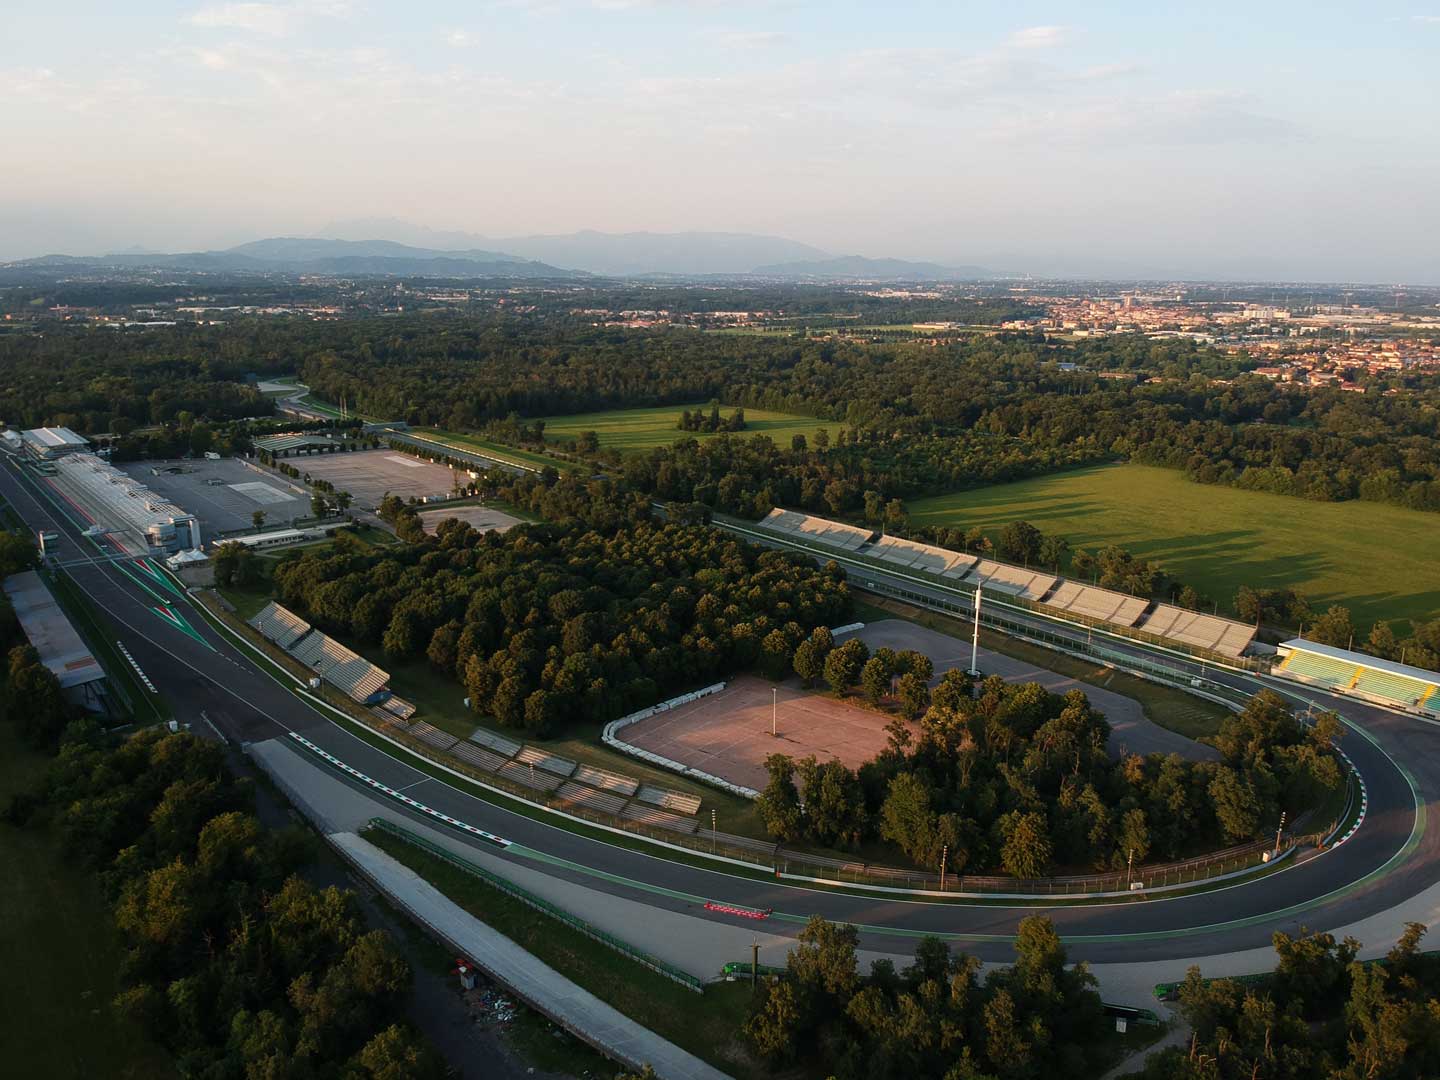 Monza national Racetrack